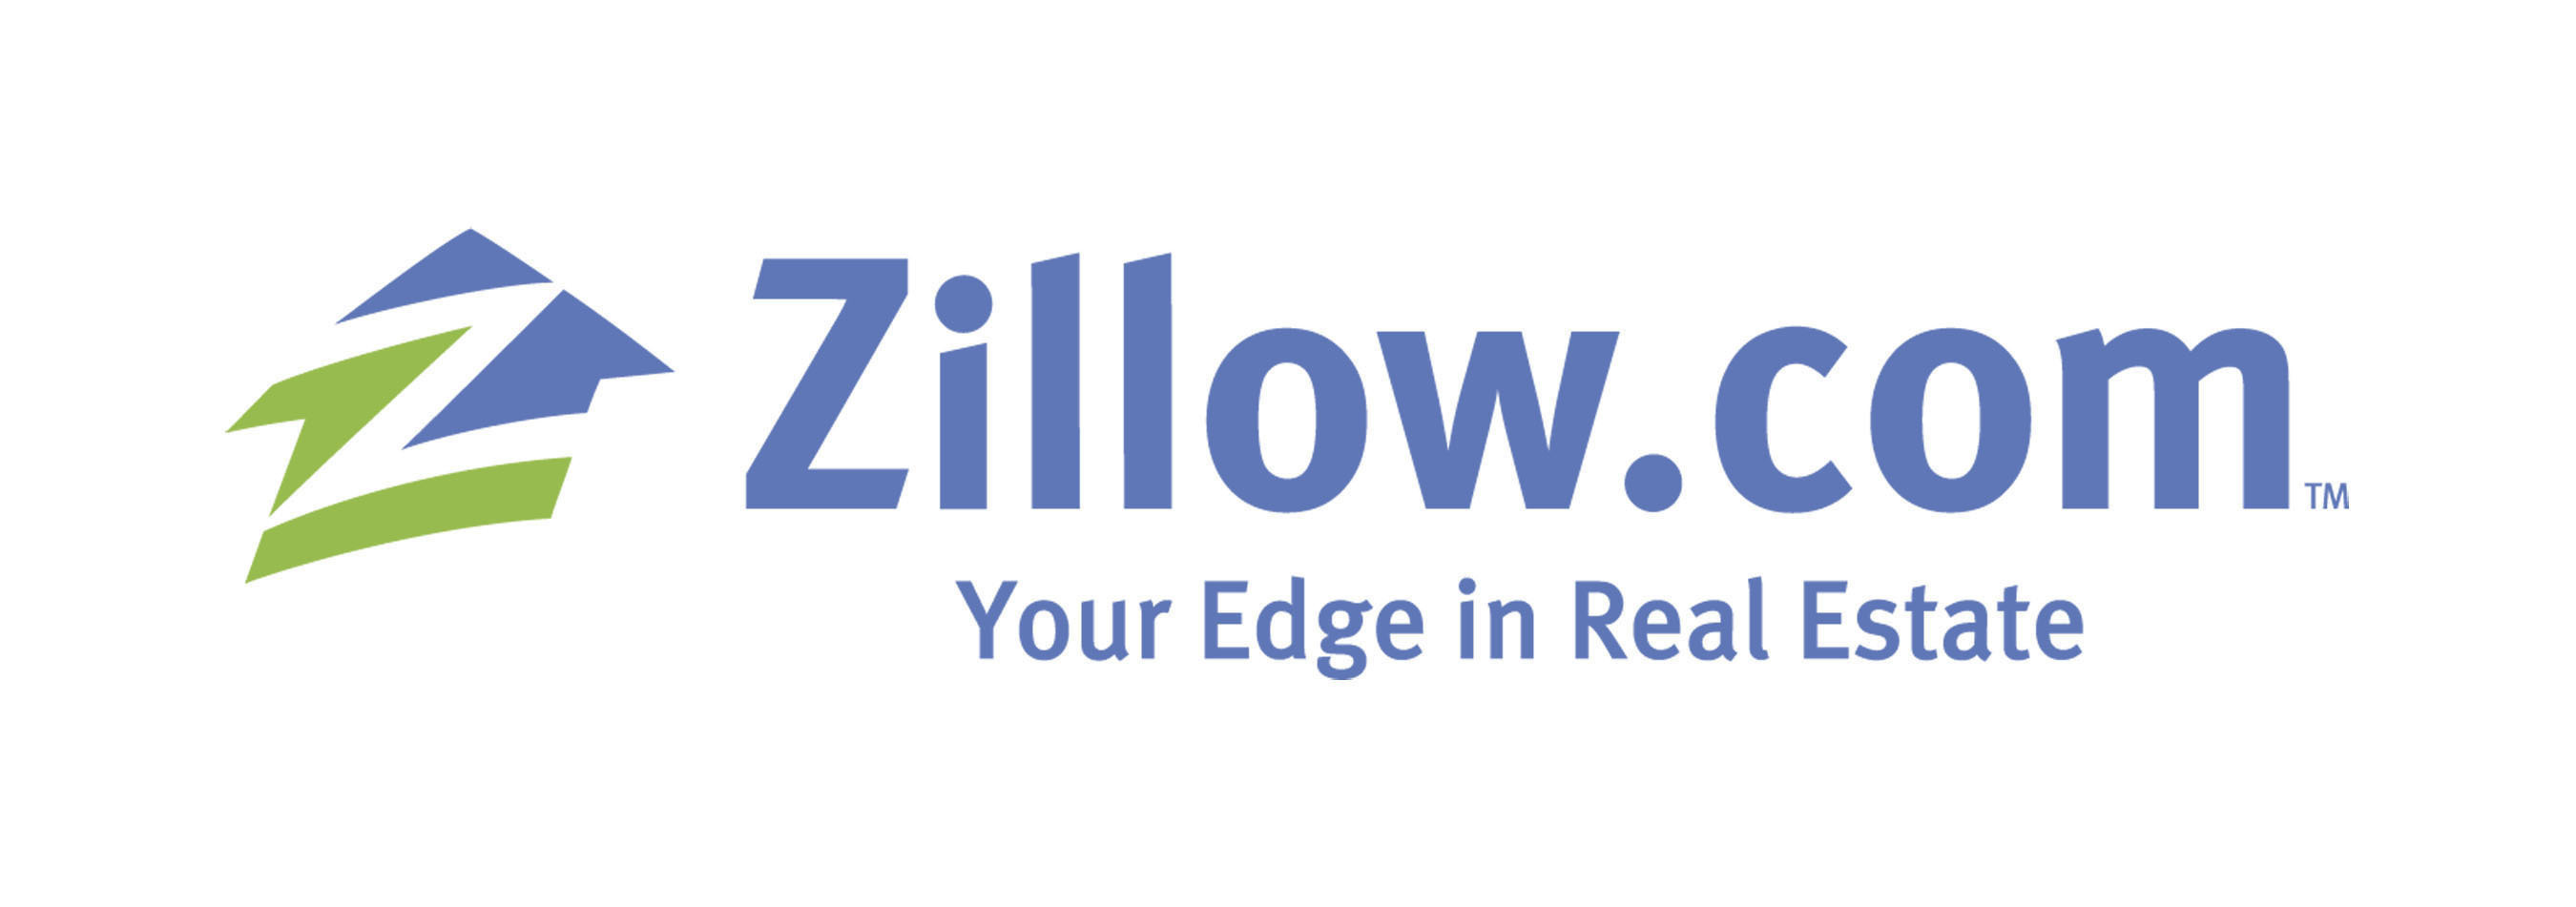 zillow.com]